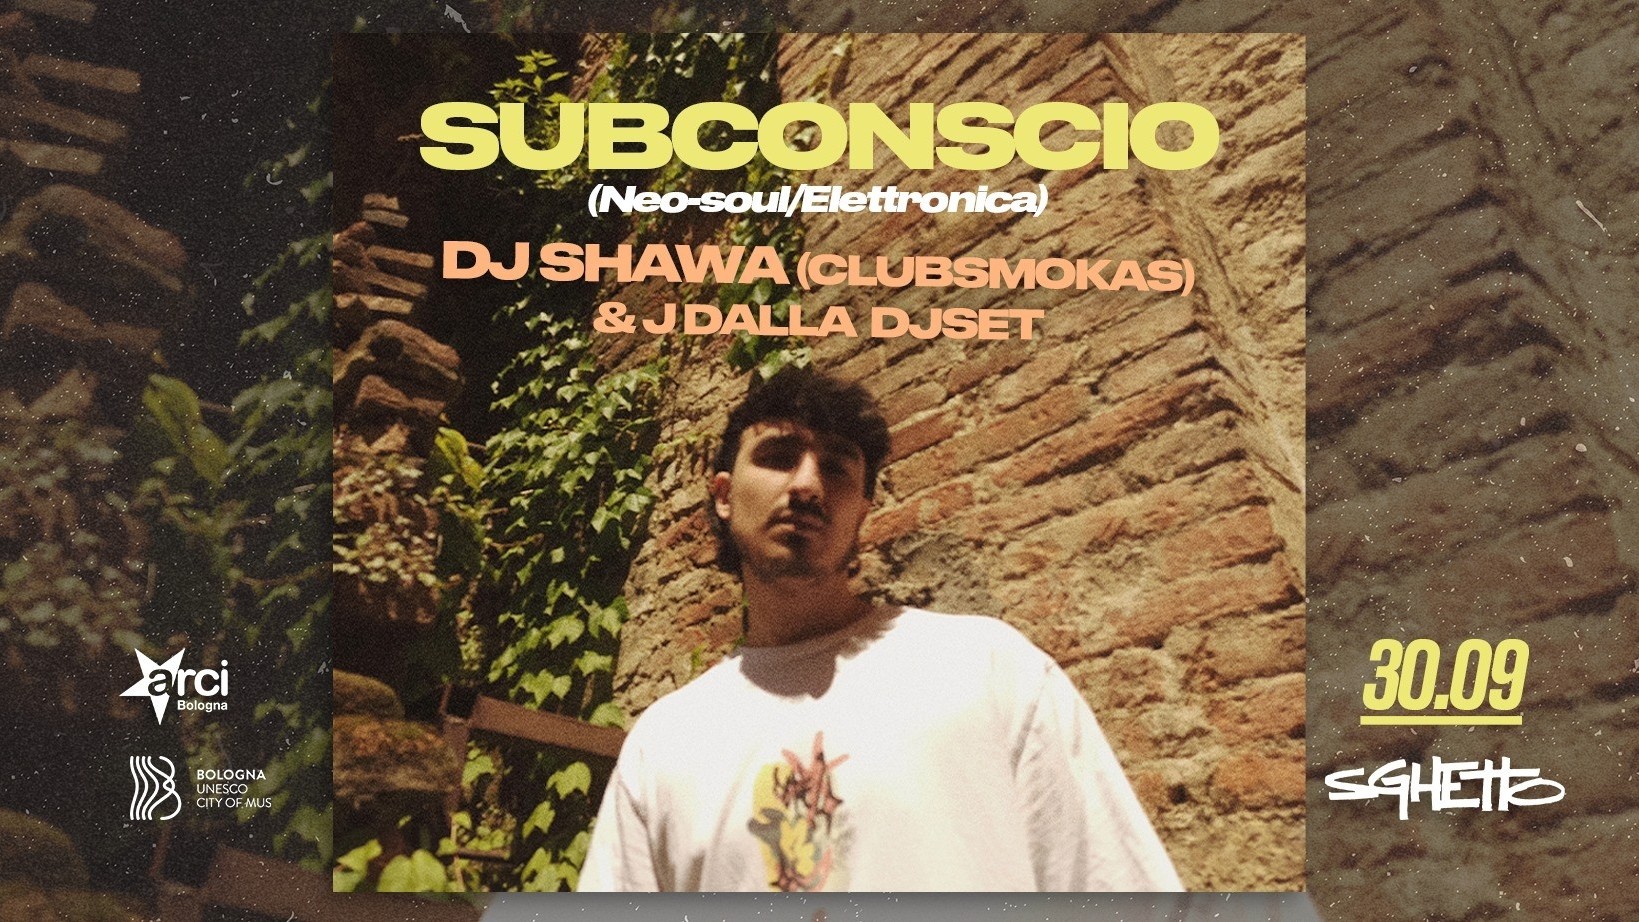 Subconscio + Dj Shawa (Clubsmokas) & J Dalla djset